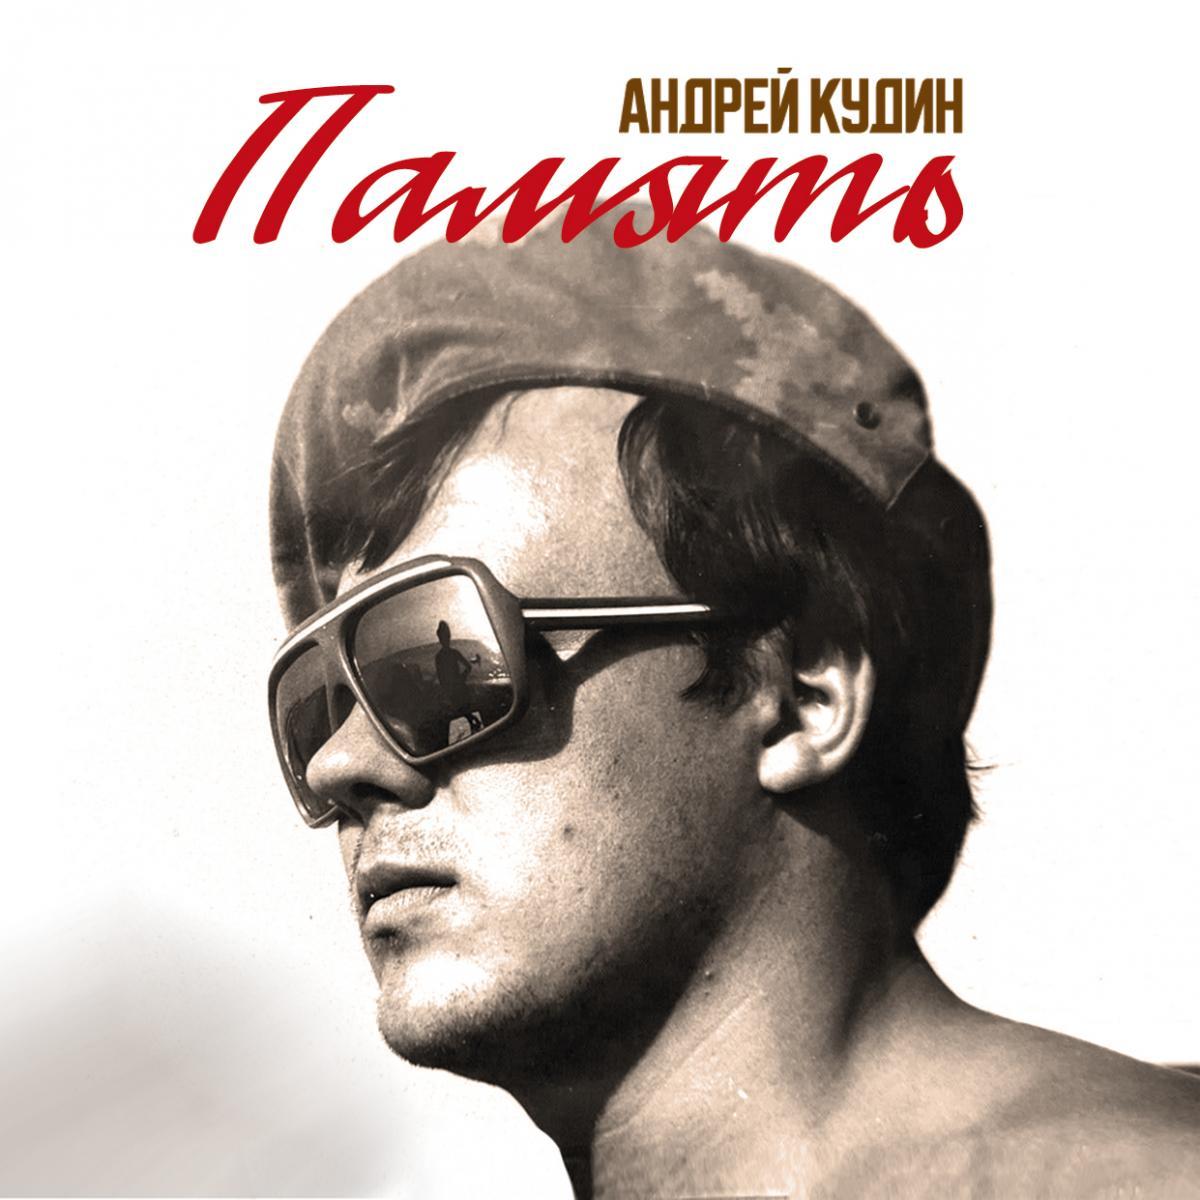 Обновляем плейлисты к 23 февраля: Андрей Кудин выпустил новый альбом